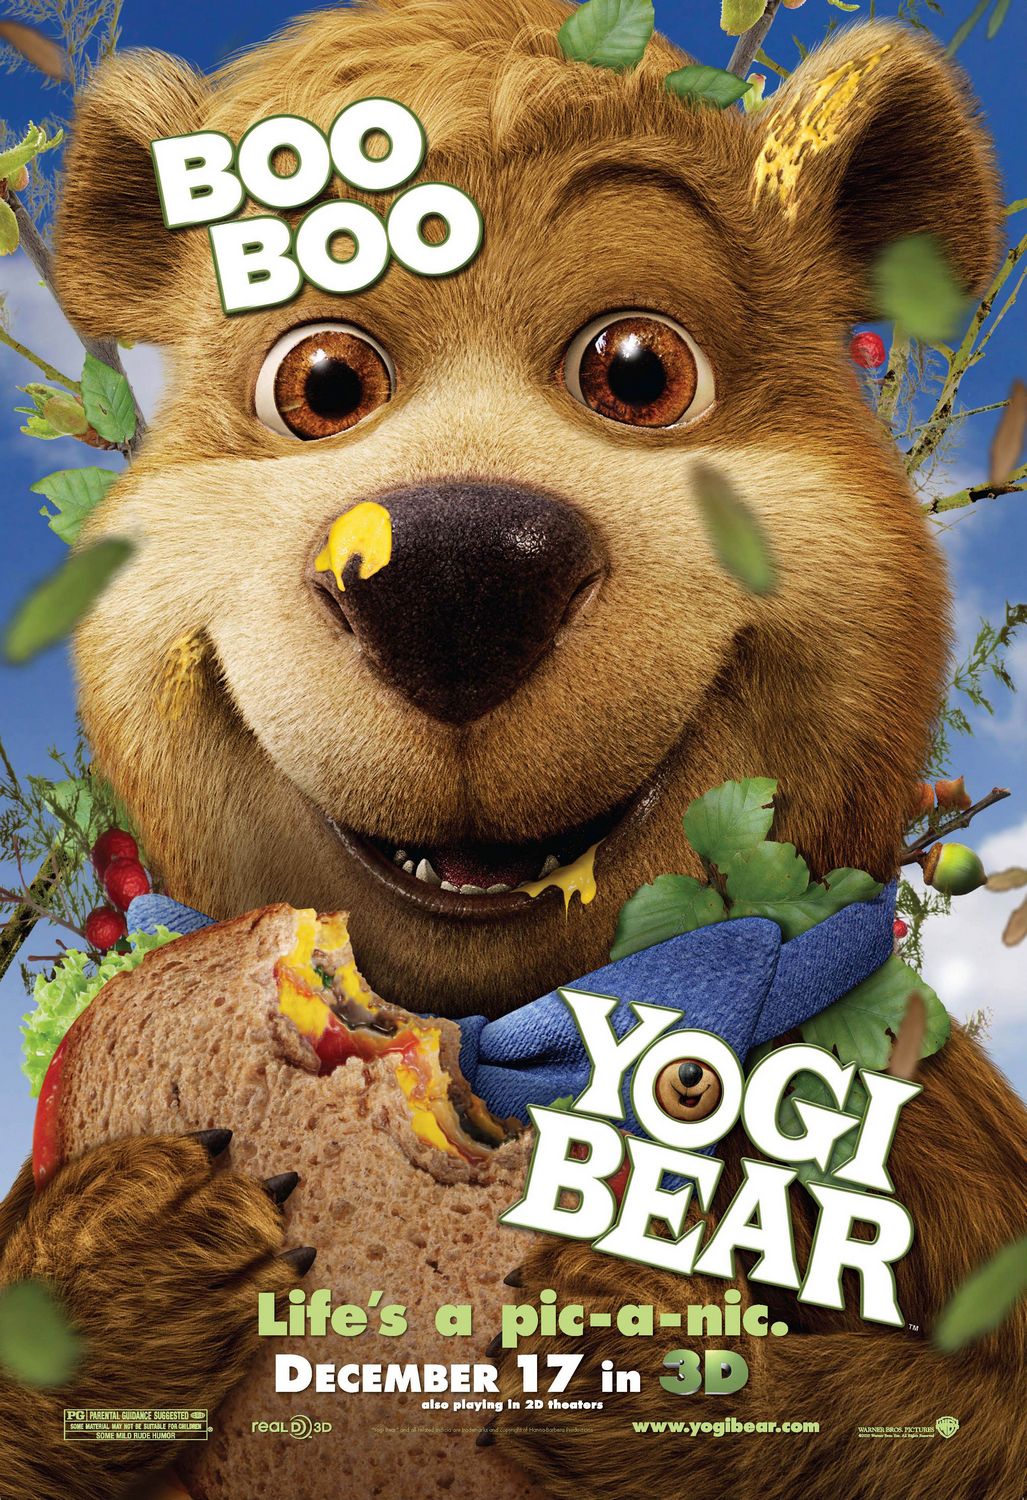 Yogi Bear (7 of 12) Extra Large Movie Poster Image IMP Awards